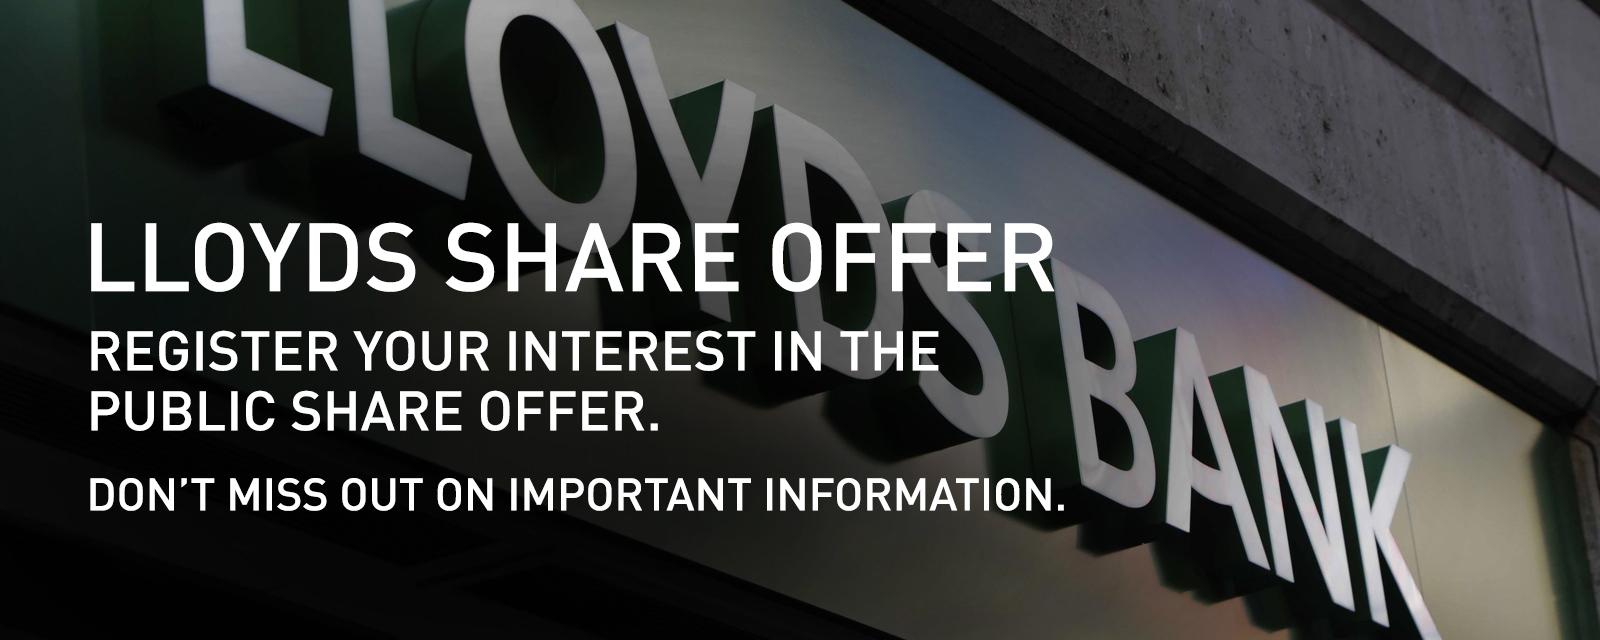 lloyds bank shares sale register interest